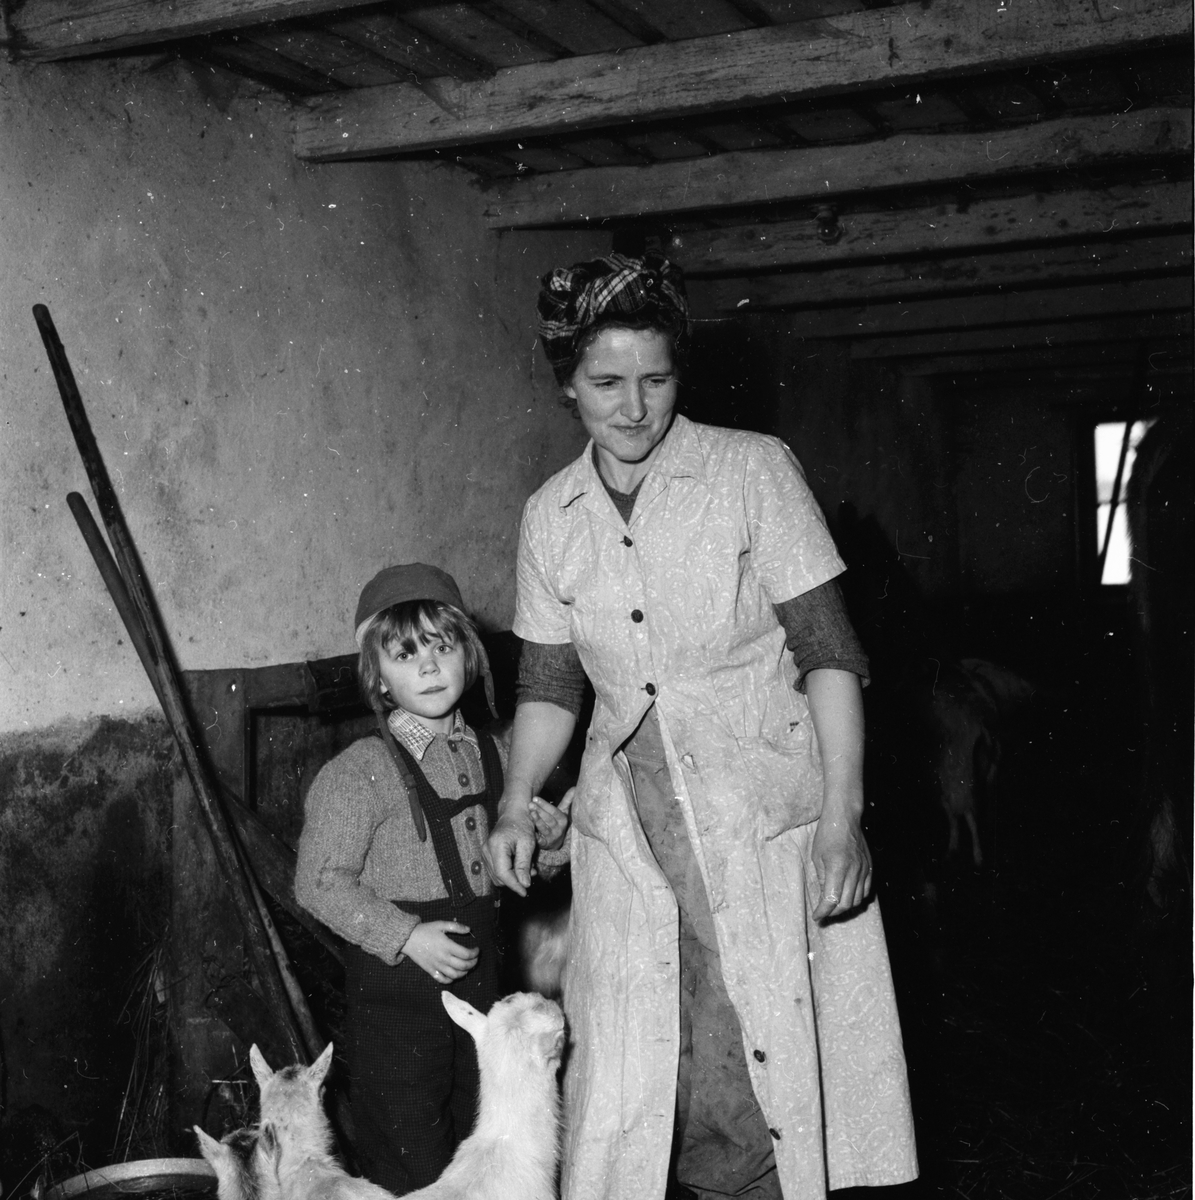 Kvinnlig jordbrukare.
Växbo 10/3 1958